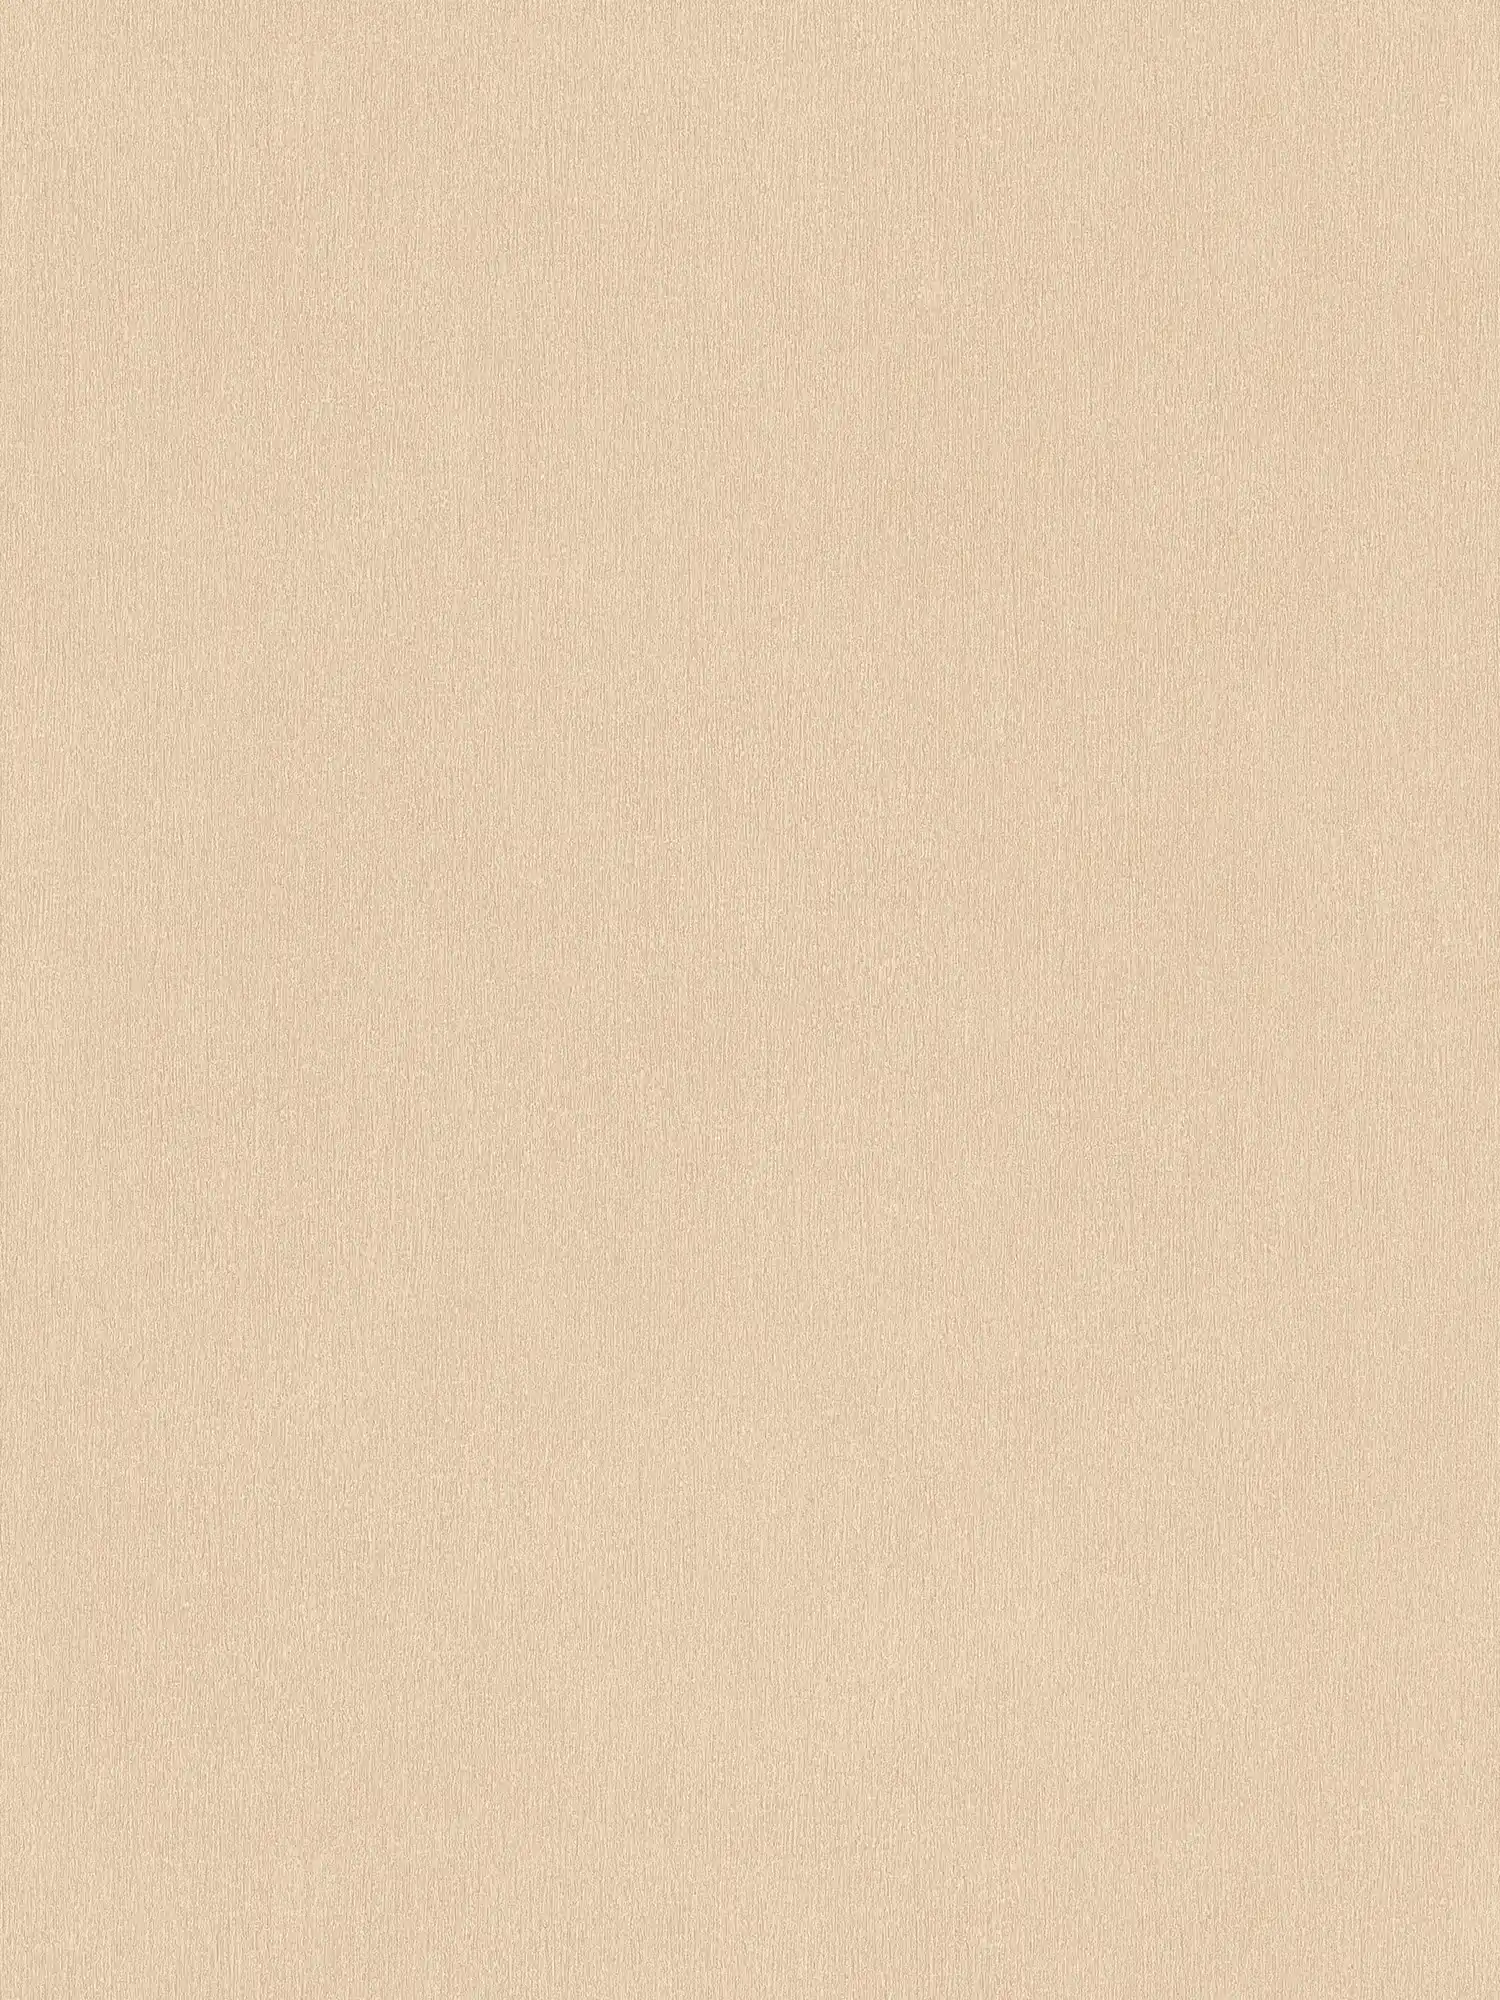 papier peint beige, uni & intissé lisse
